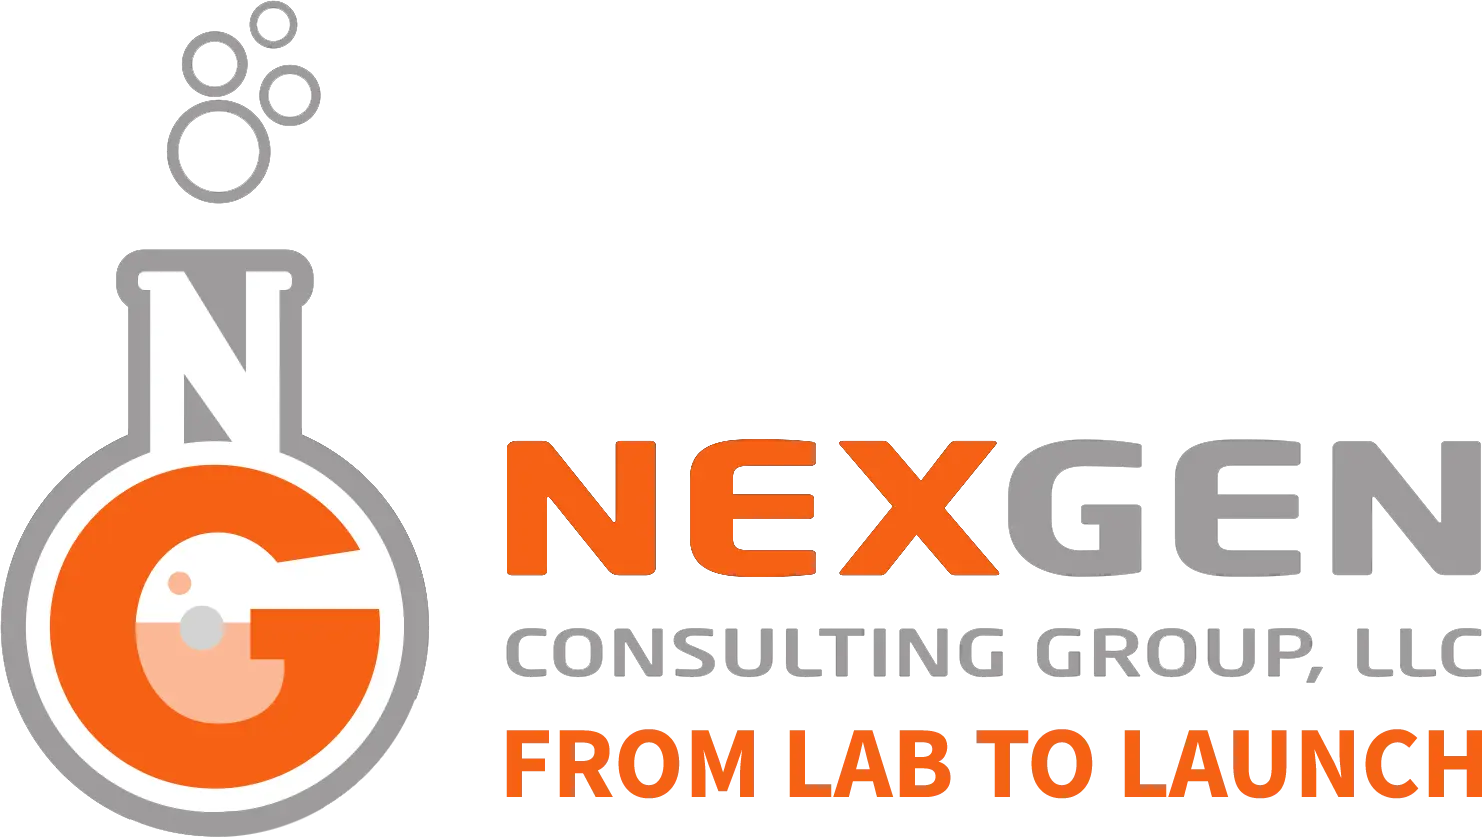 NexGen Logo